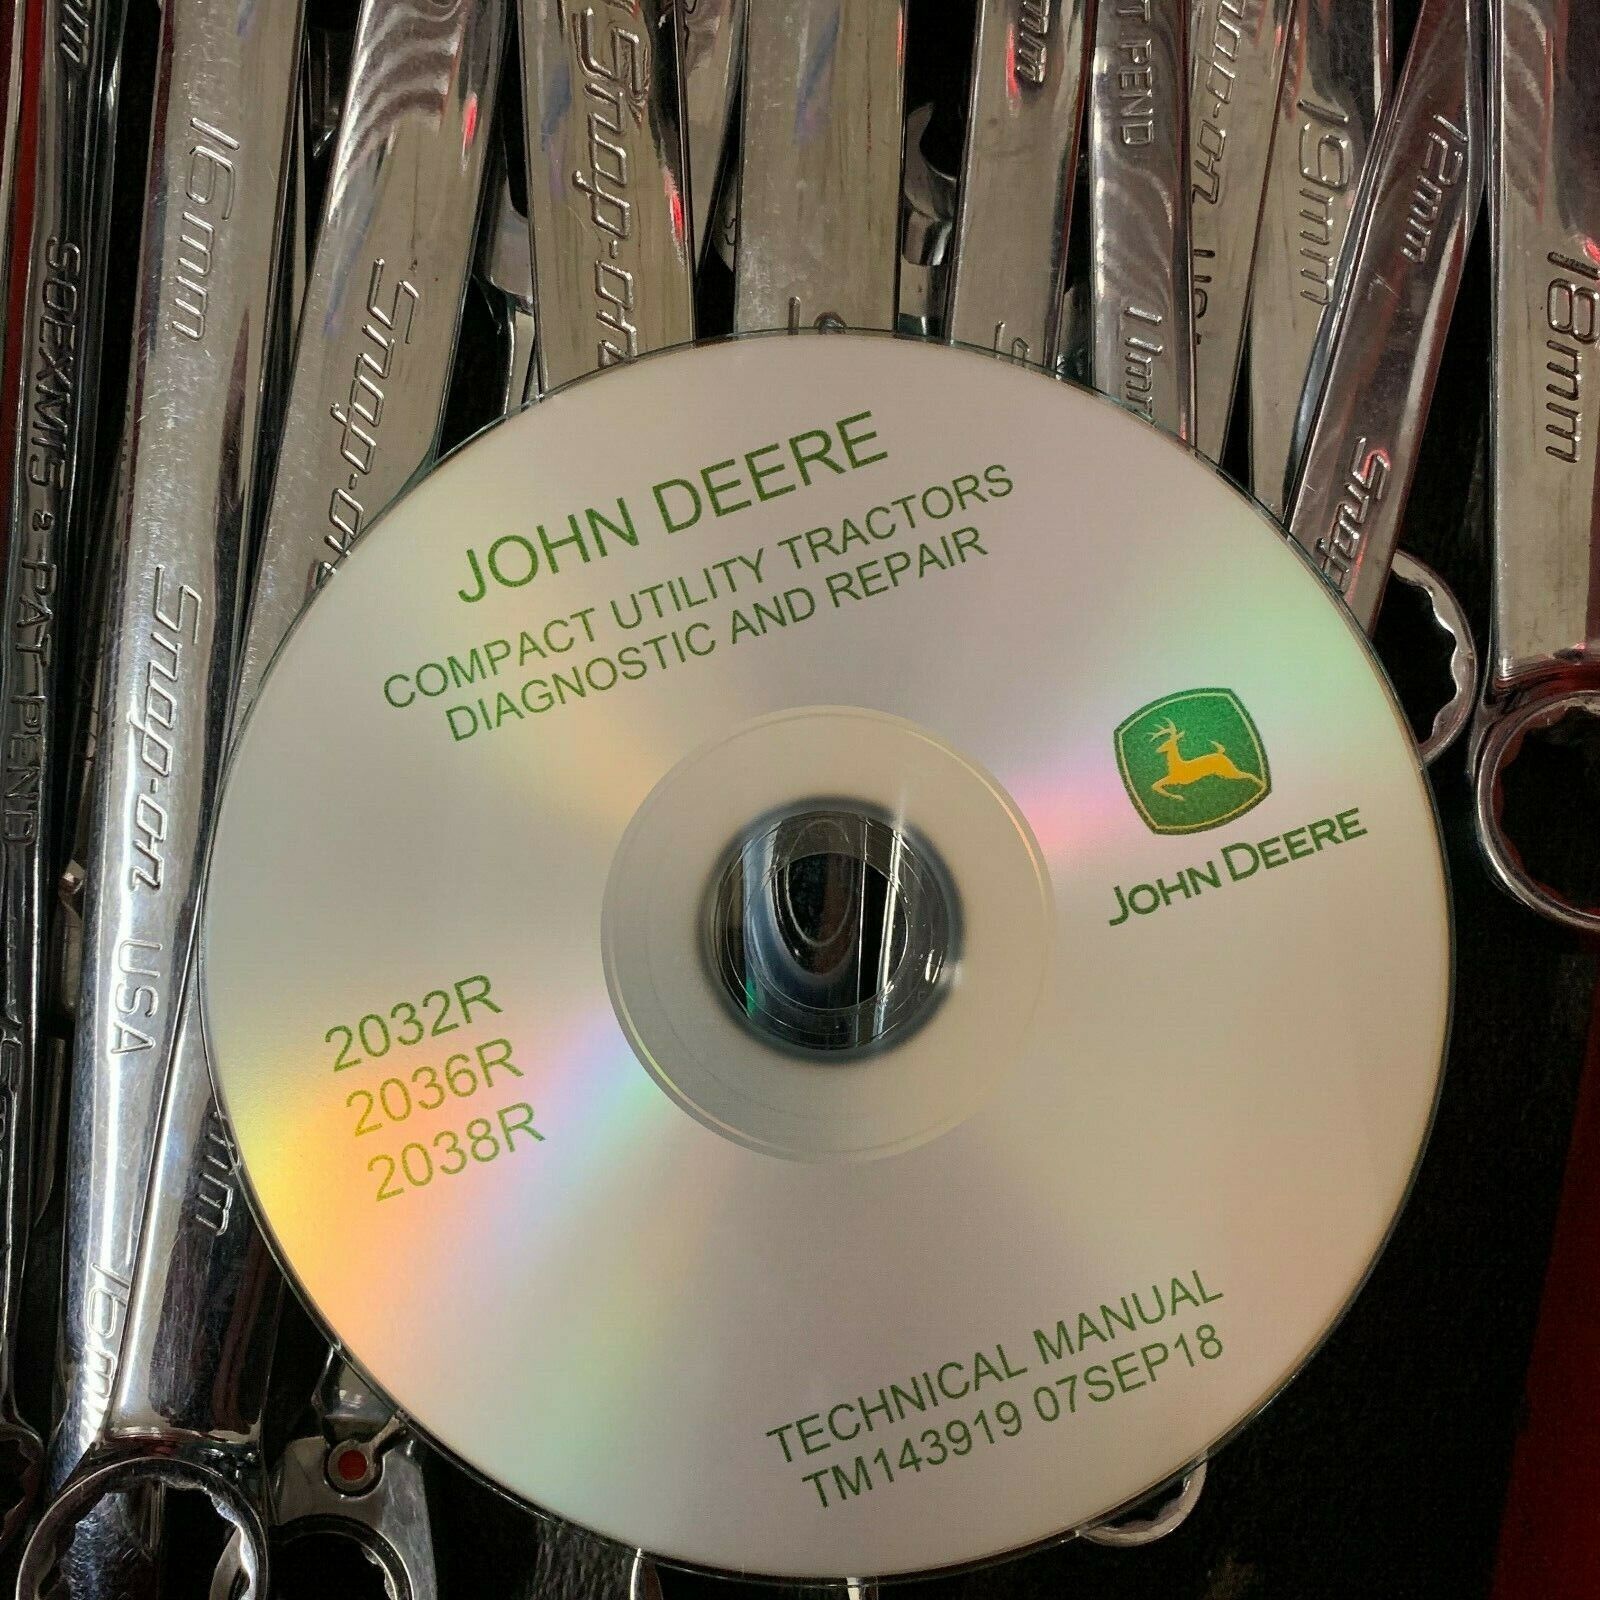 John Deere 2032R 2036R 2038R Compact Tractors Service Repair Manual TM143919 CD